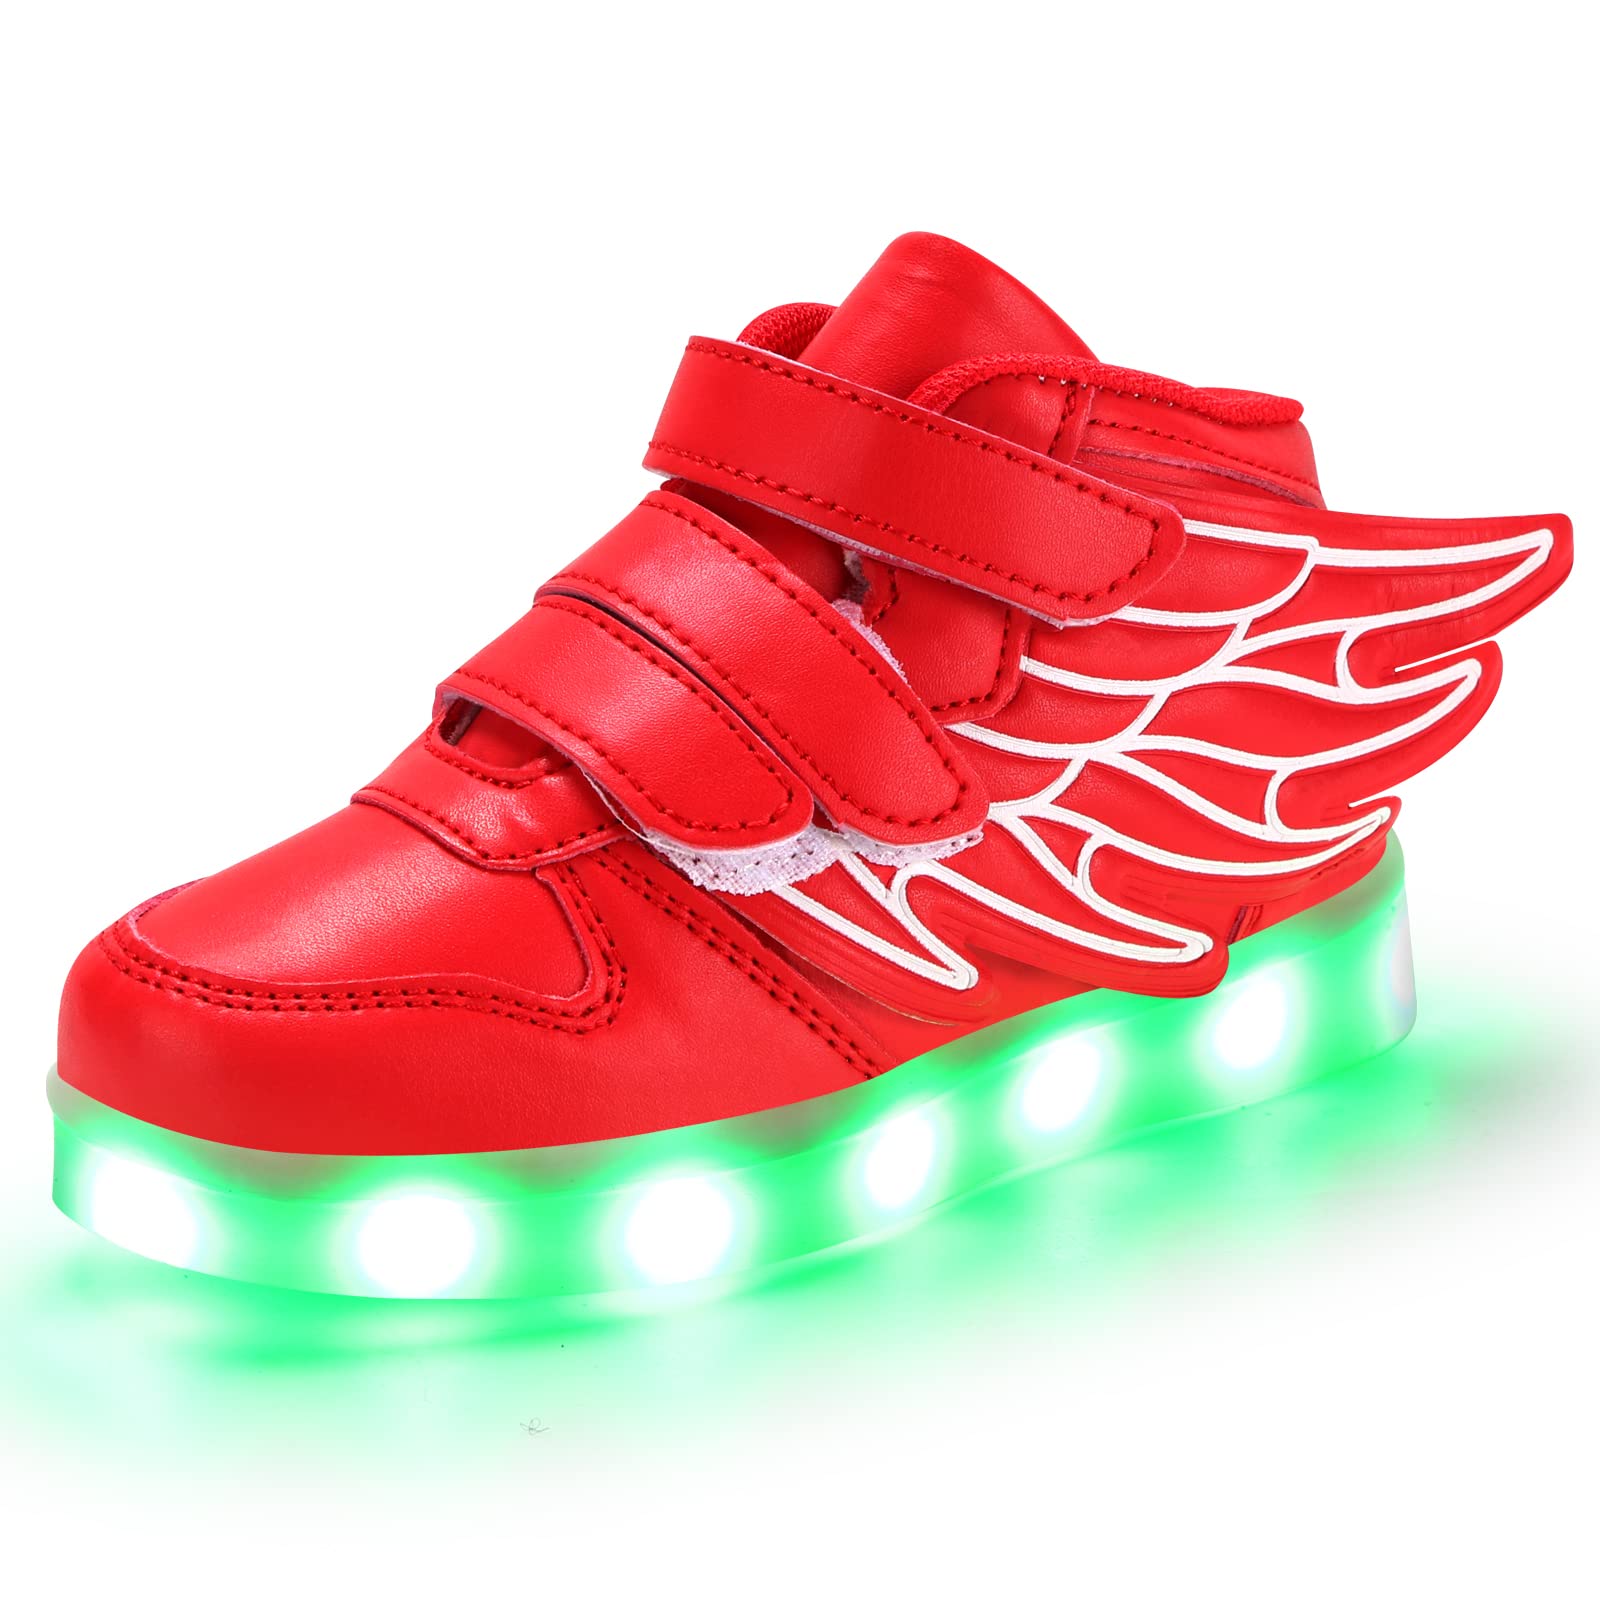 acheter PADGENE Chaussures Enfants Garçon Fille Basket LED Lumineuse 7 Couleurs Clignotants USB Rechargeable Securité Mode Haut Dessus Taille O9SkOYrGH Vente chaude